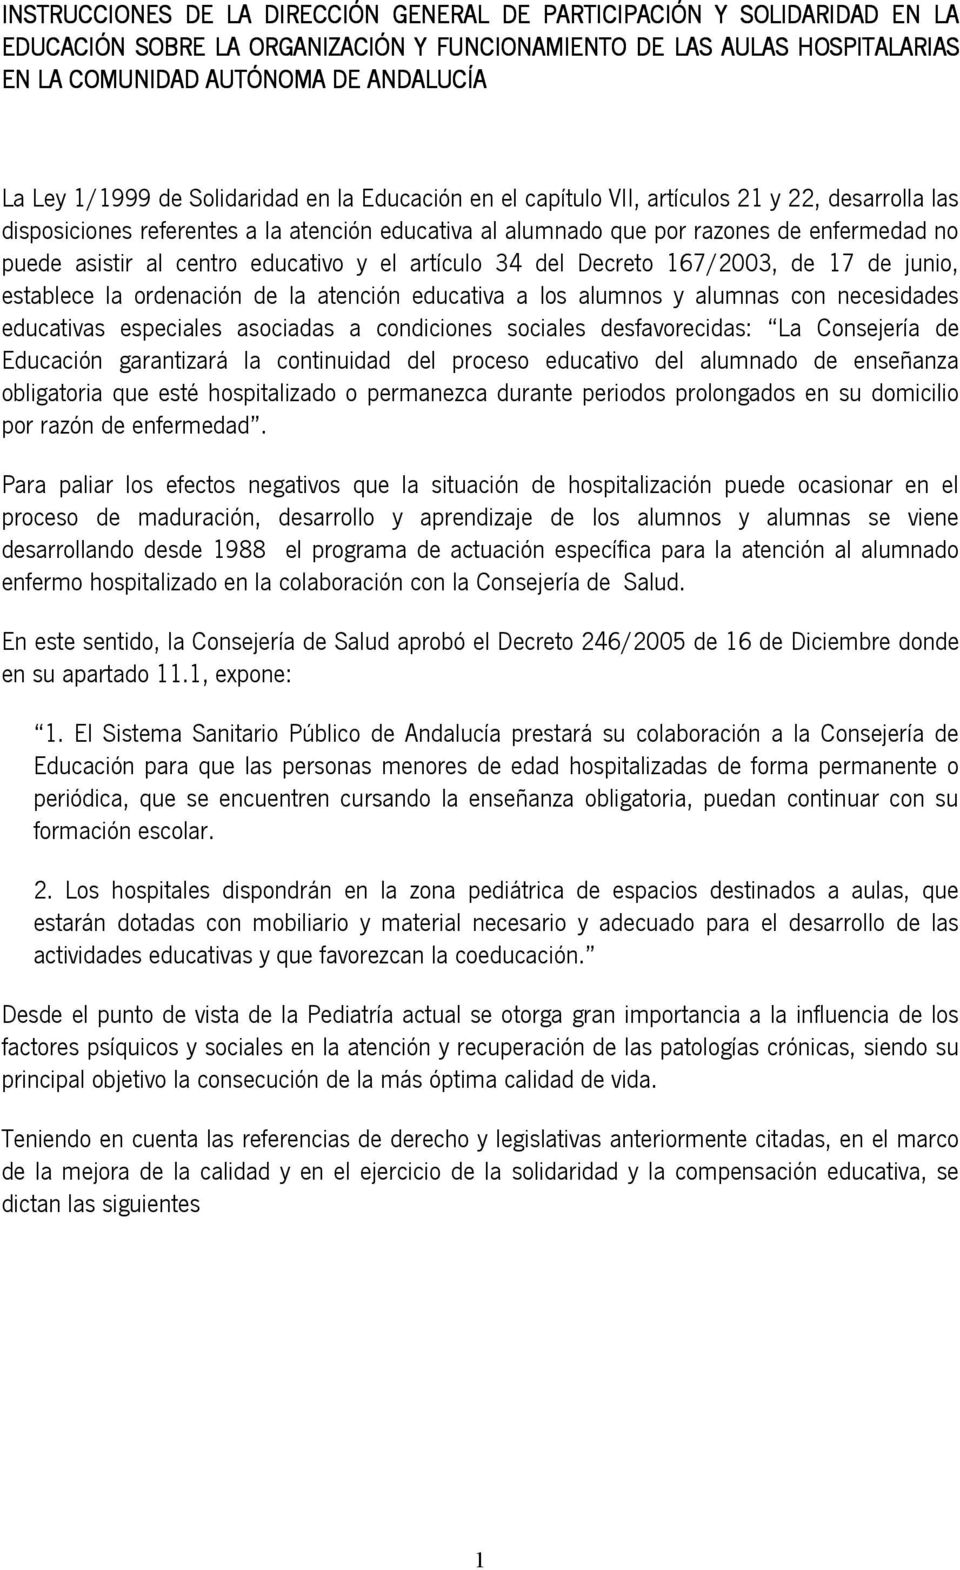 al centro educativo y el artículo 34 del Decreto 167/2003, de 17 de junio, establece la ordenación de la atención educativa a los alumnos y alumnas con necesidades educativas especiales asociadas a